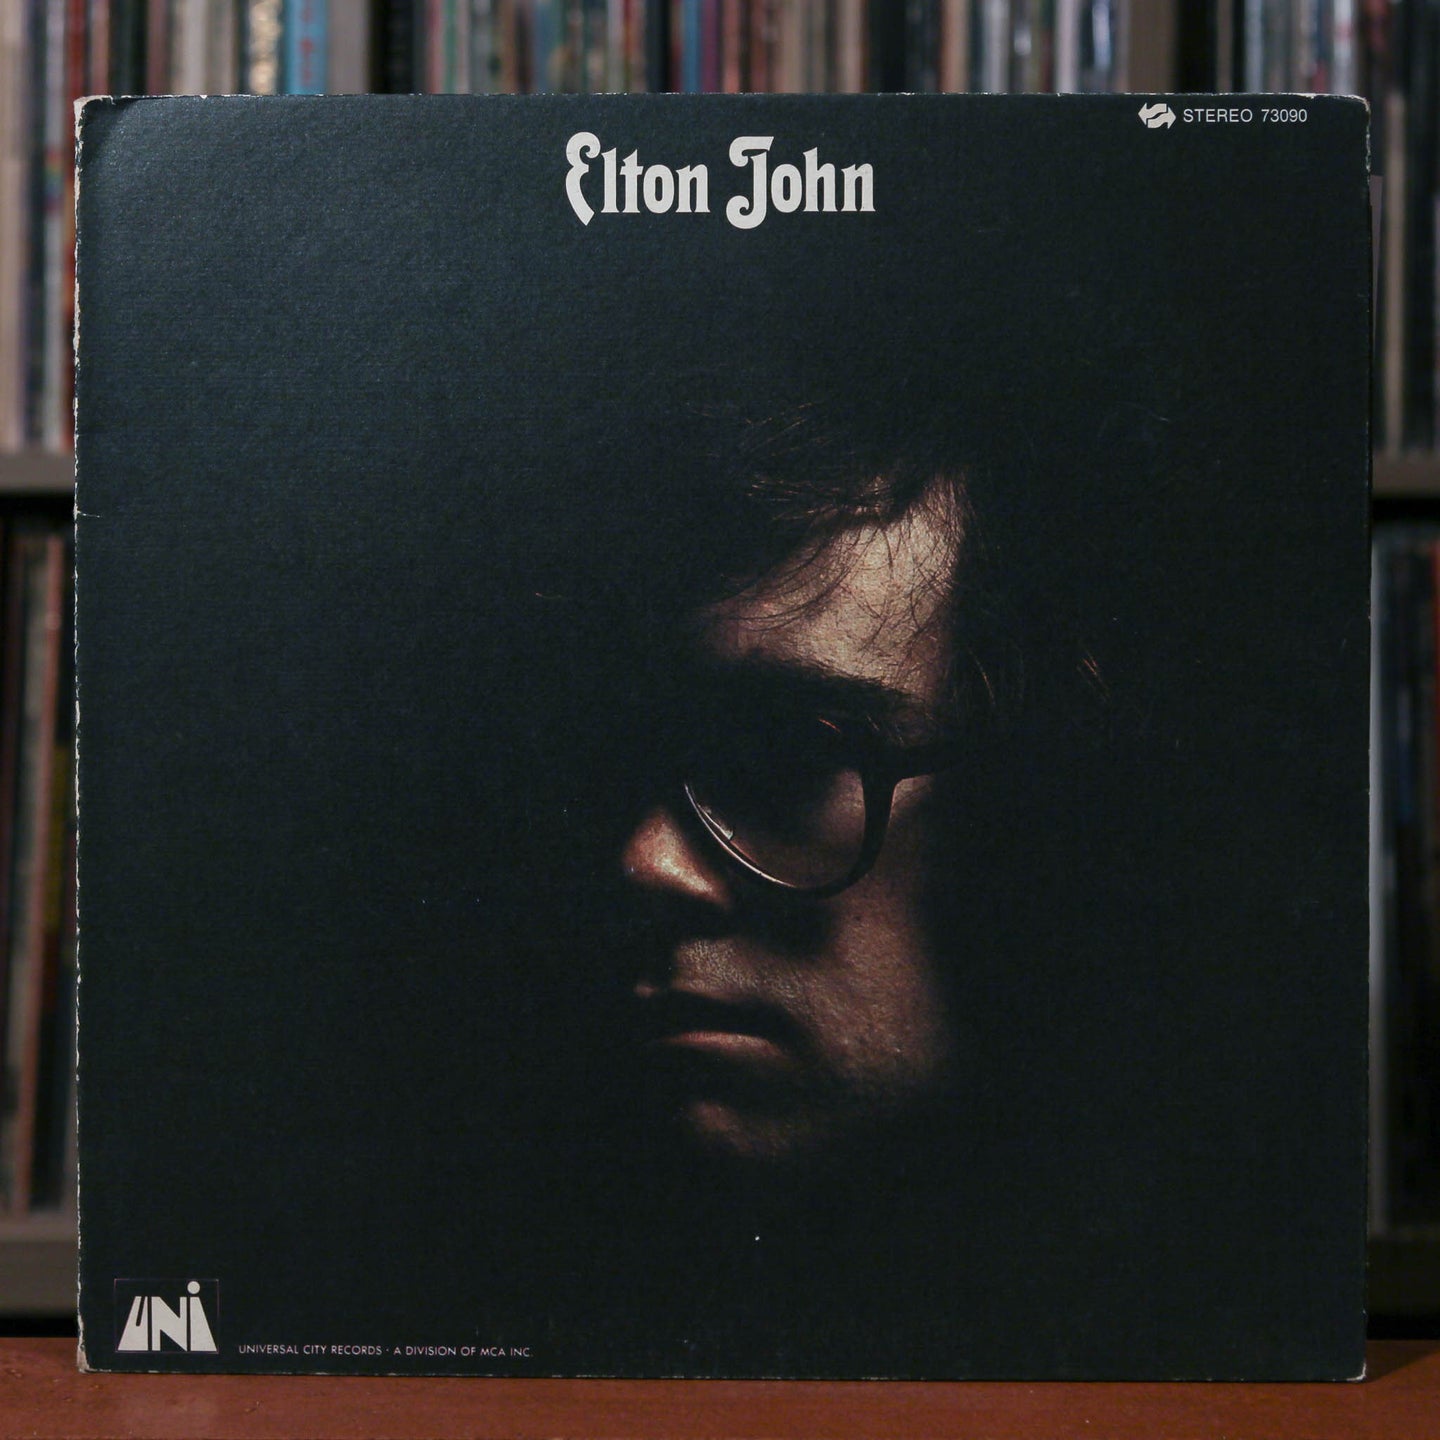 Elton John - 5 Album Bundle - Yellow Brick Road, Elton John, Don't Shoot, Madman, Tumbleweed